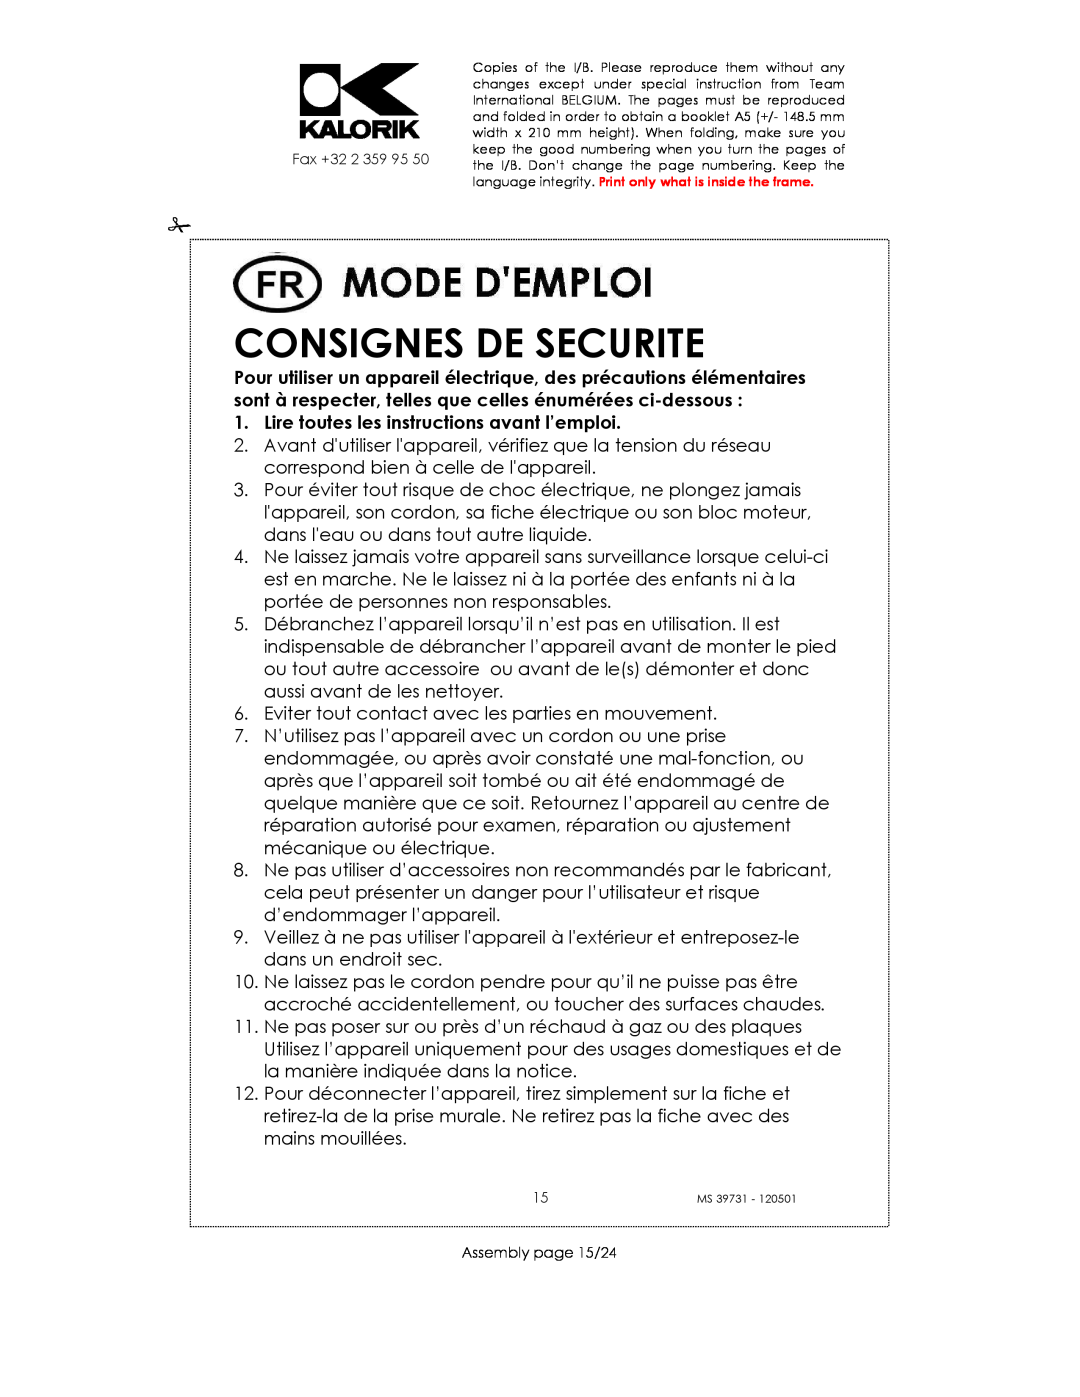 Kalorik MS 39731 manual Consignes De Securite, Lire toutes les instructions avant l’emploi 